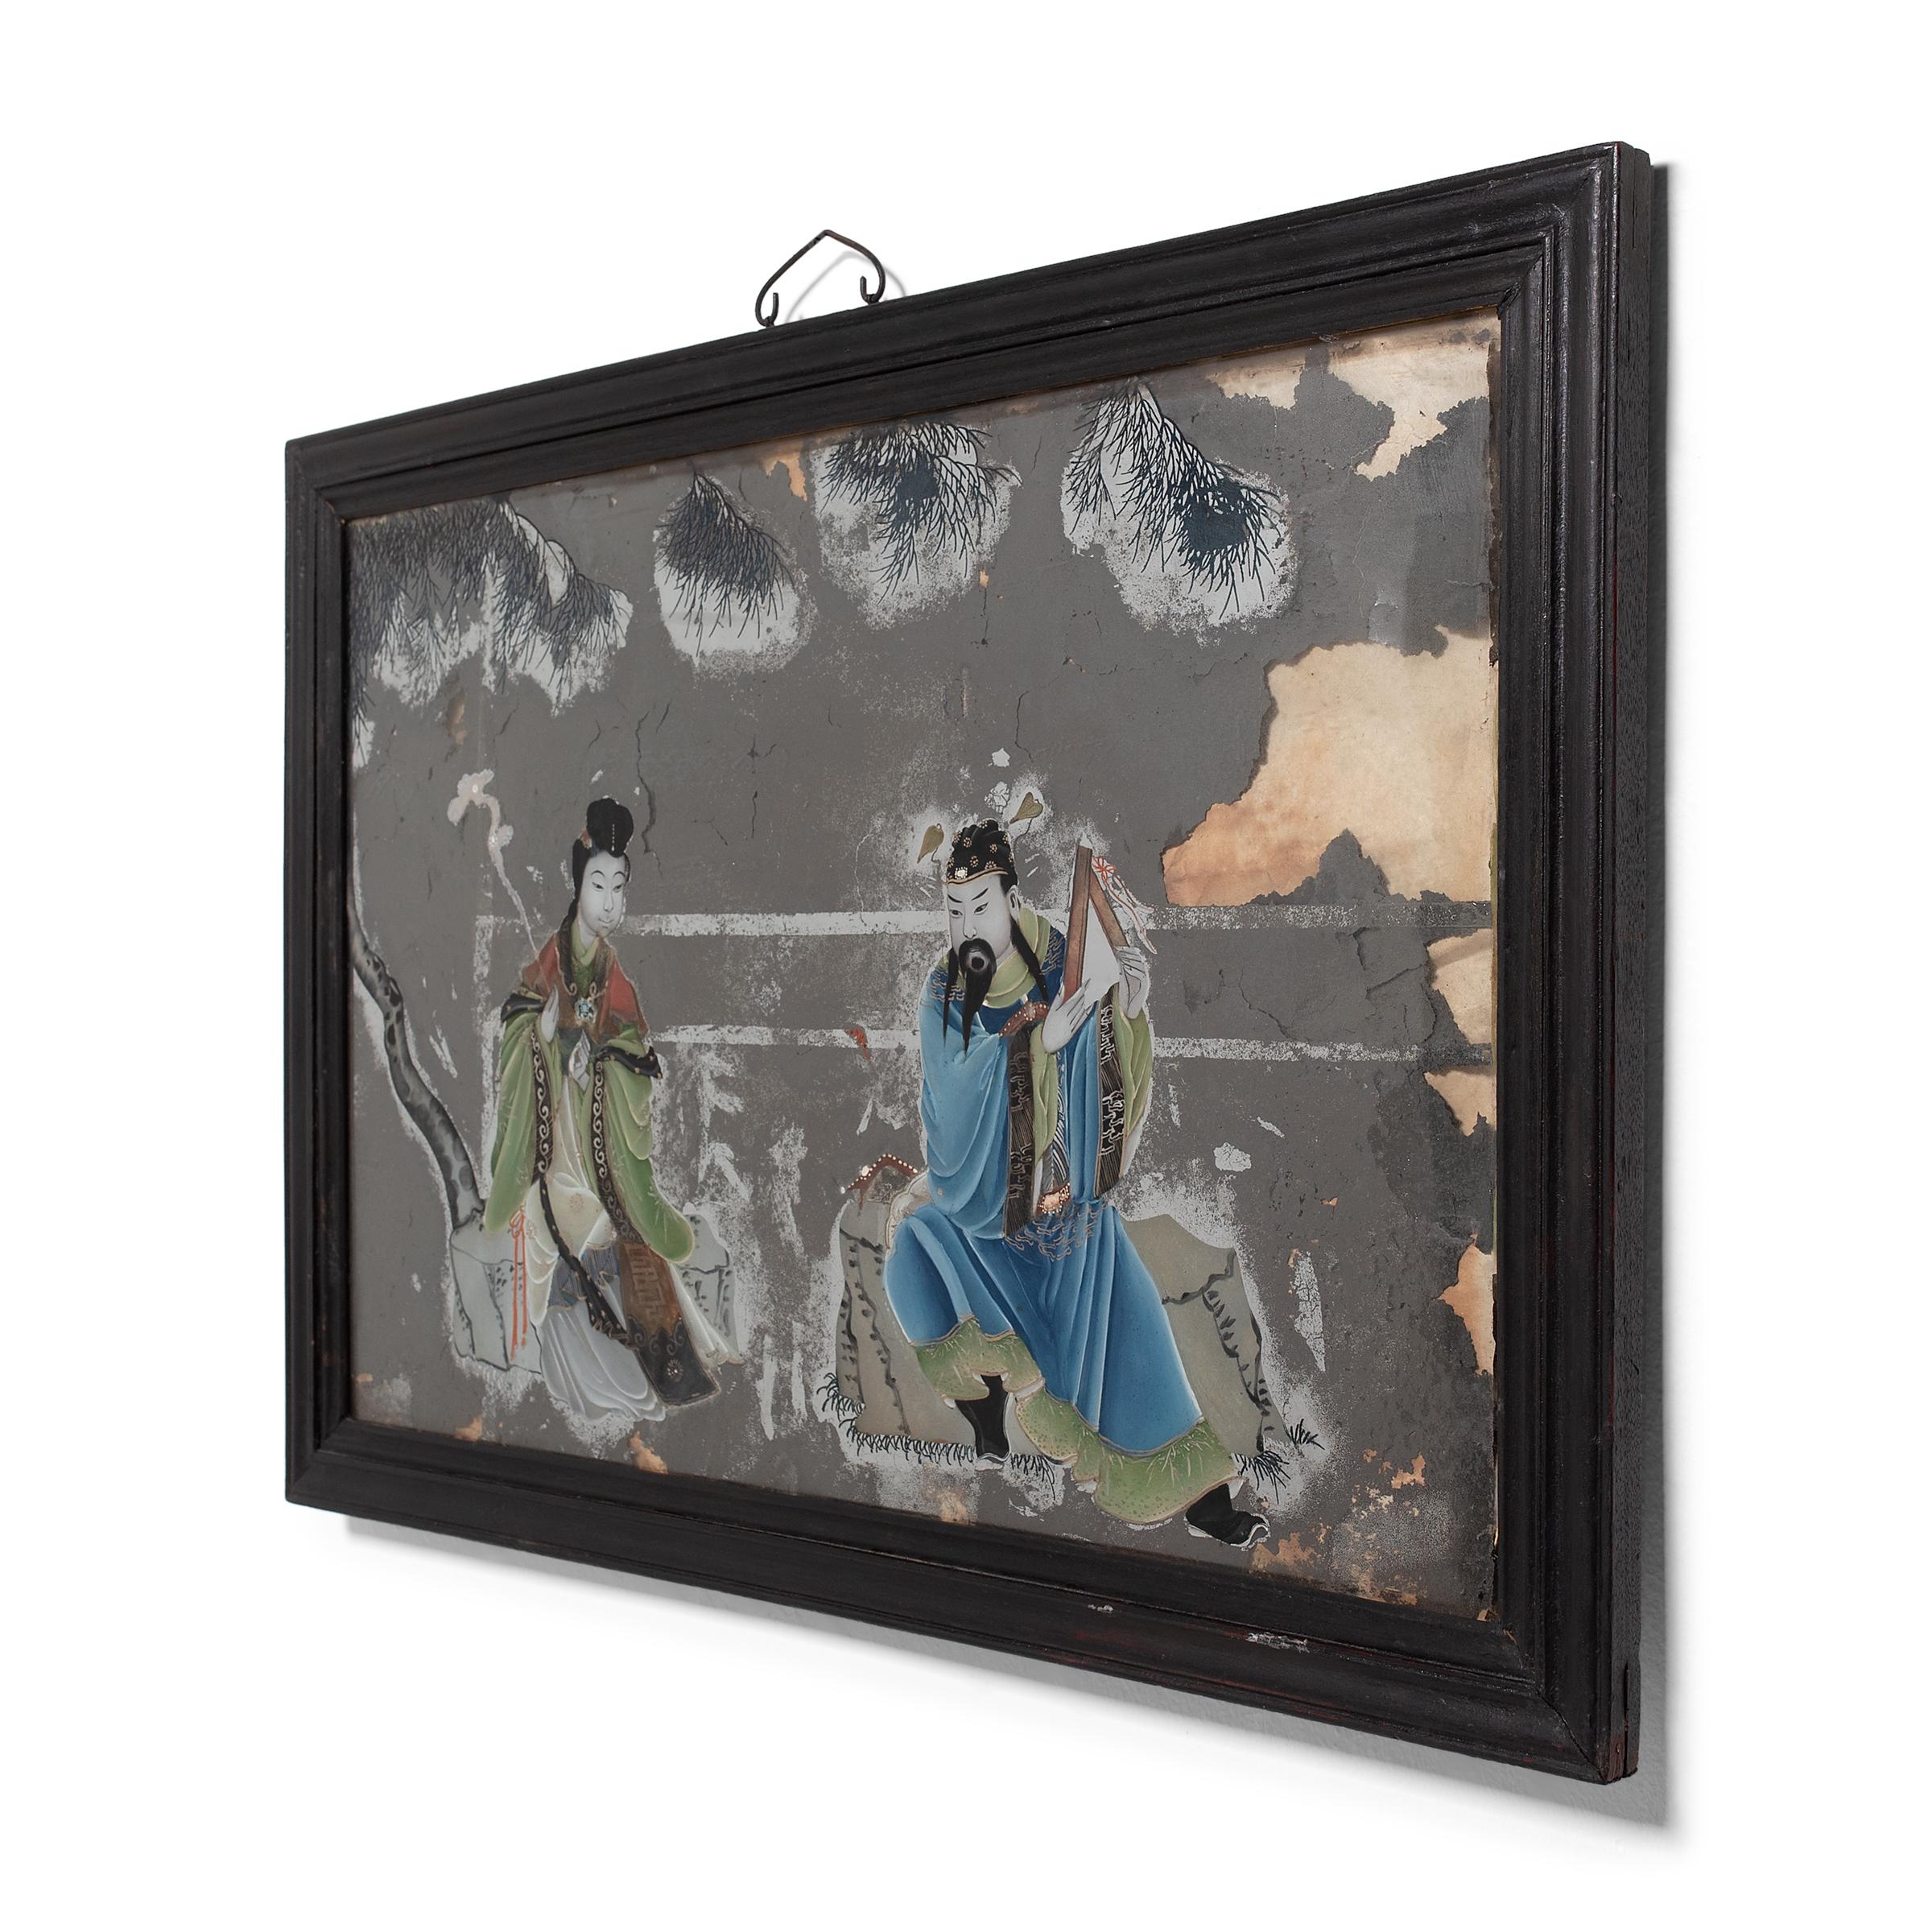 Popularisée sous la dynastie Qing, la peinture sur verre à l'envers exige de l'artiste qu'il travaille essentiellement à l'envers, en commençant par les détails et les ombres avant d'ajouter la couleur et la forme. Cette technique exigeante, qui ne